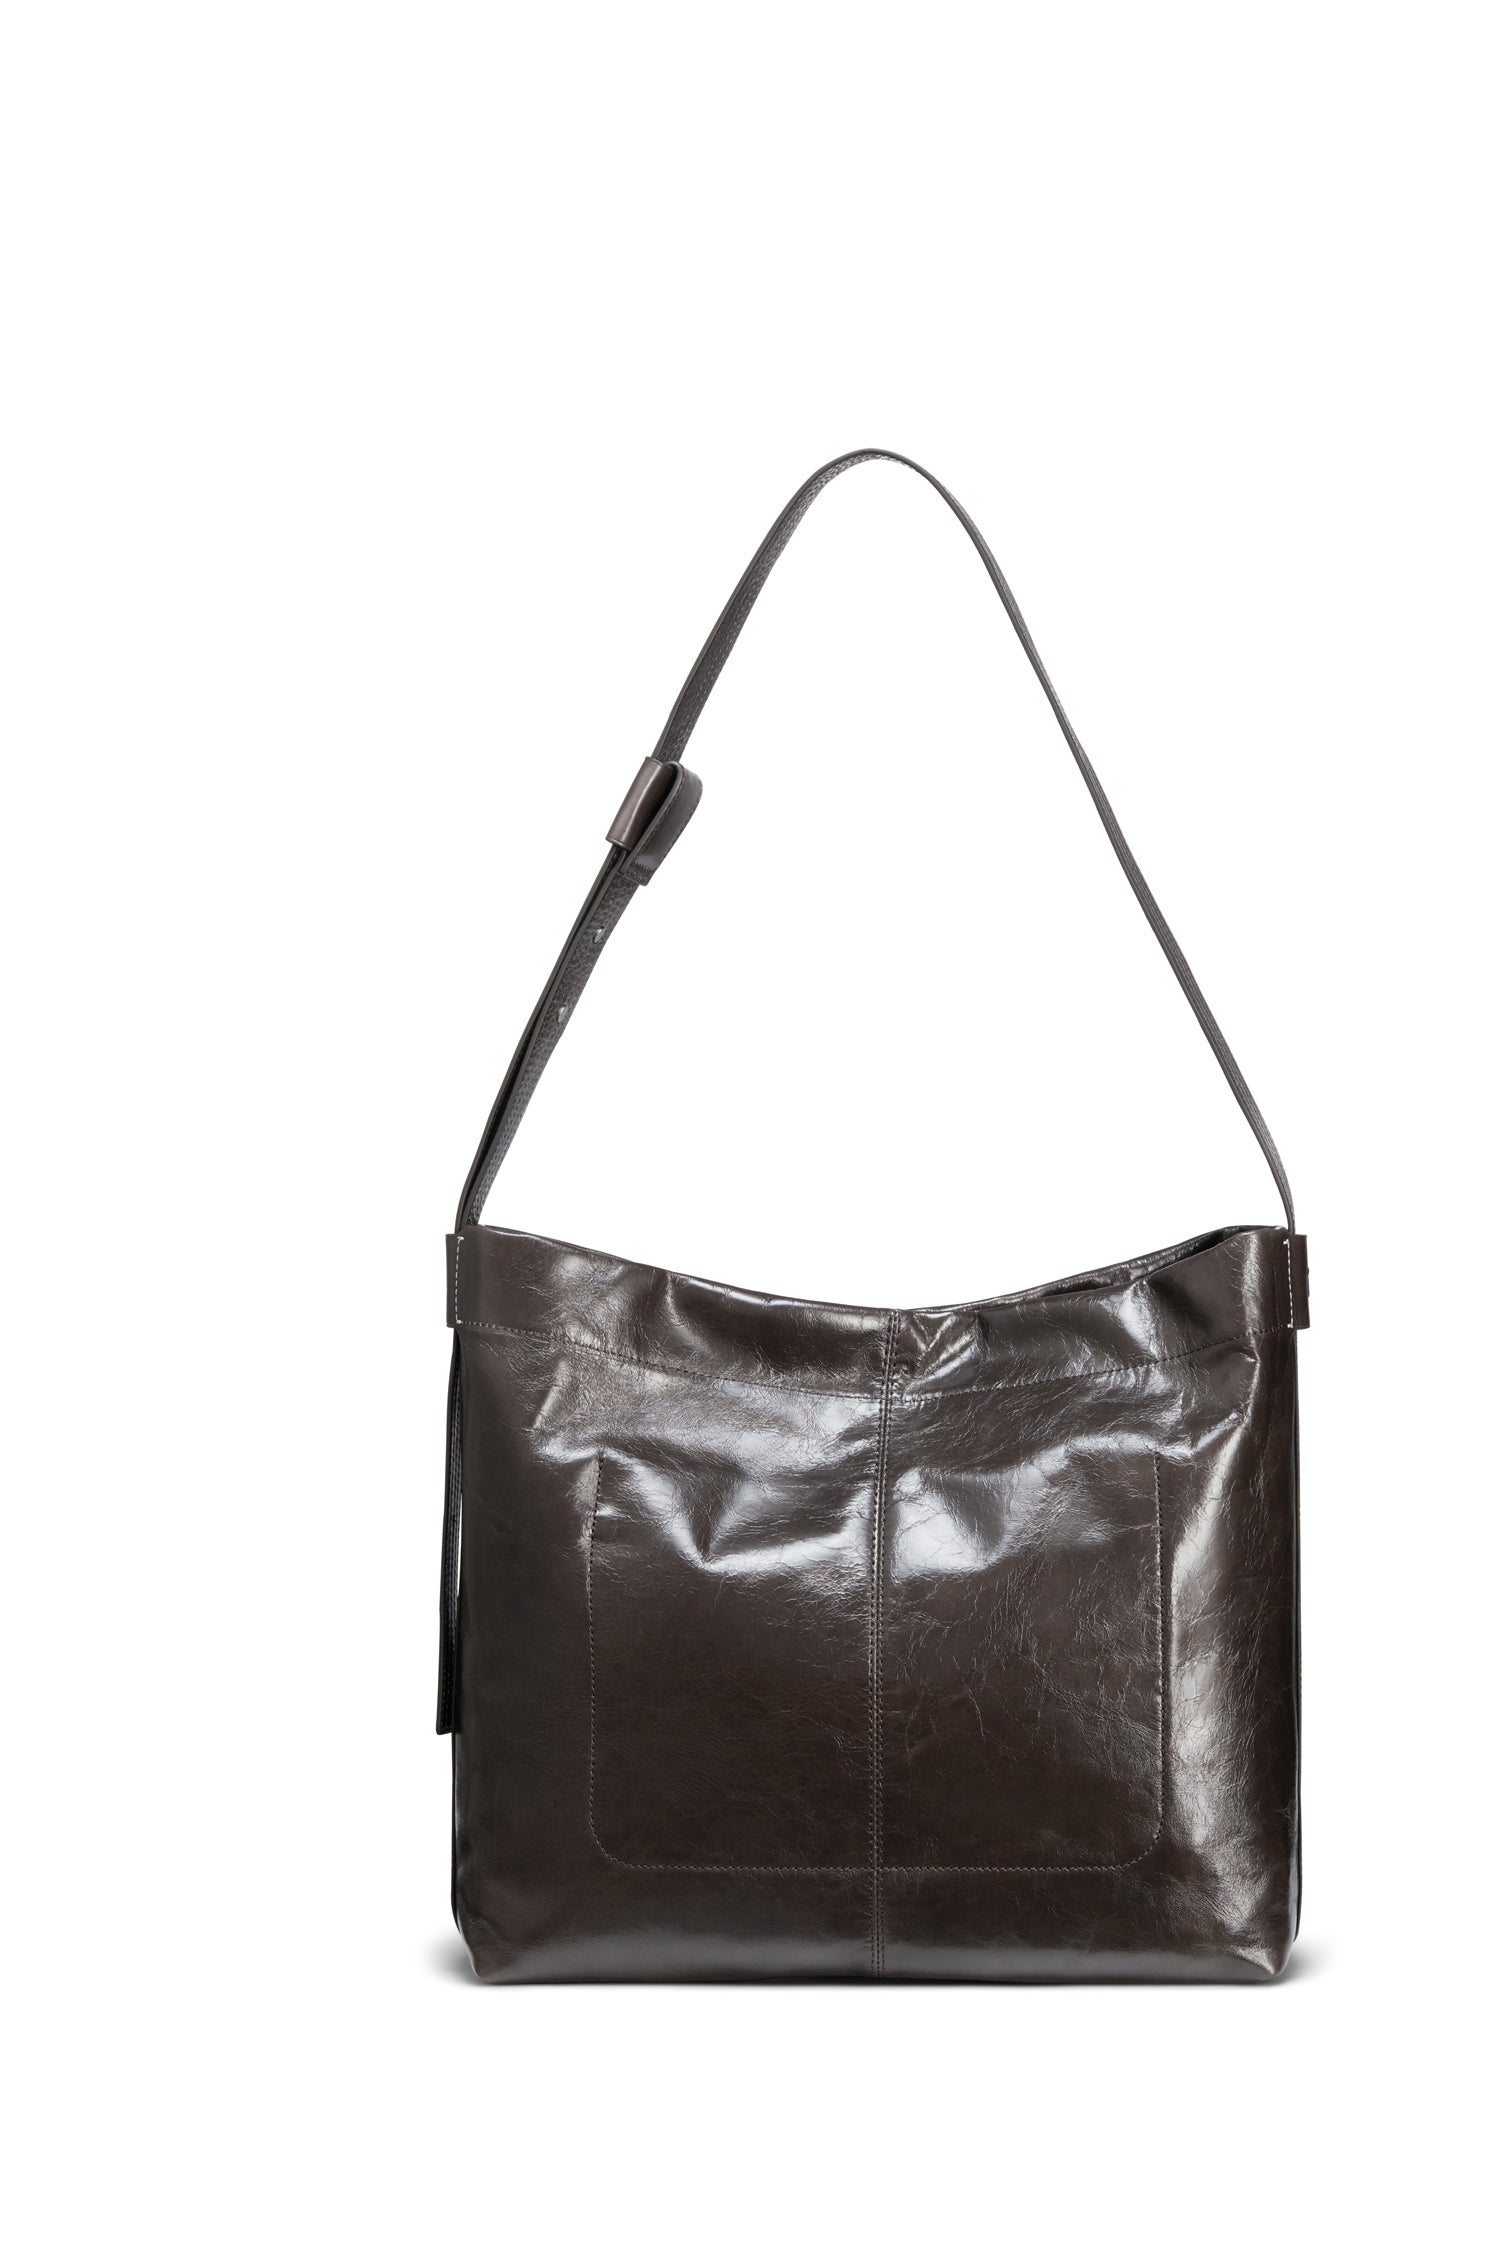 TUPLUS Urban Luxe Tote Bag